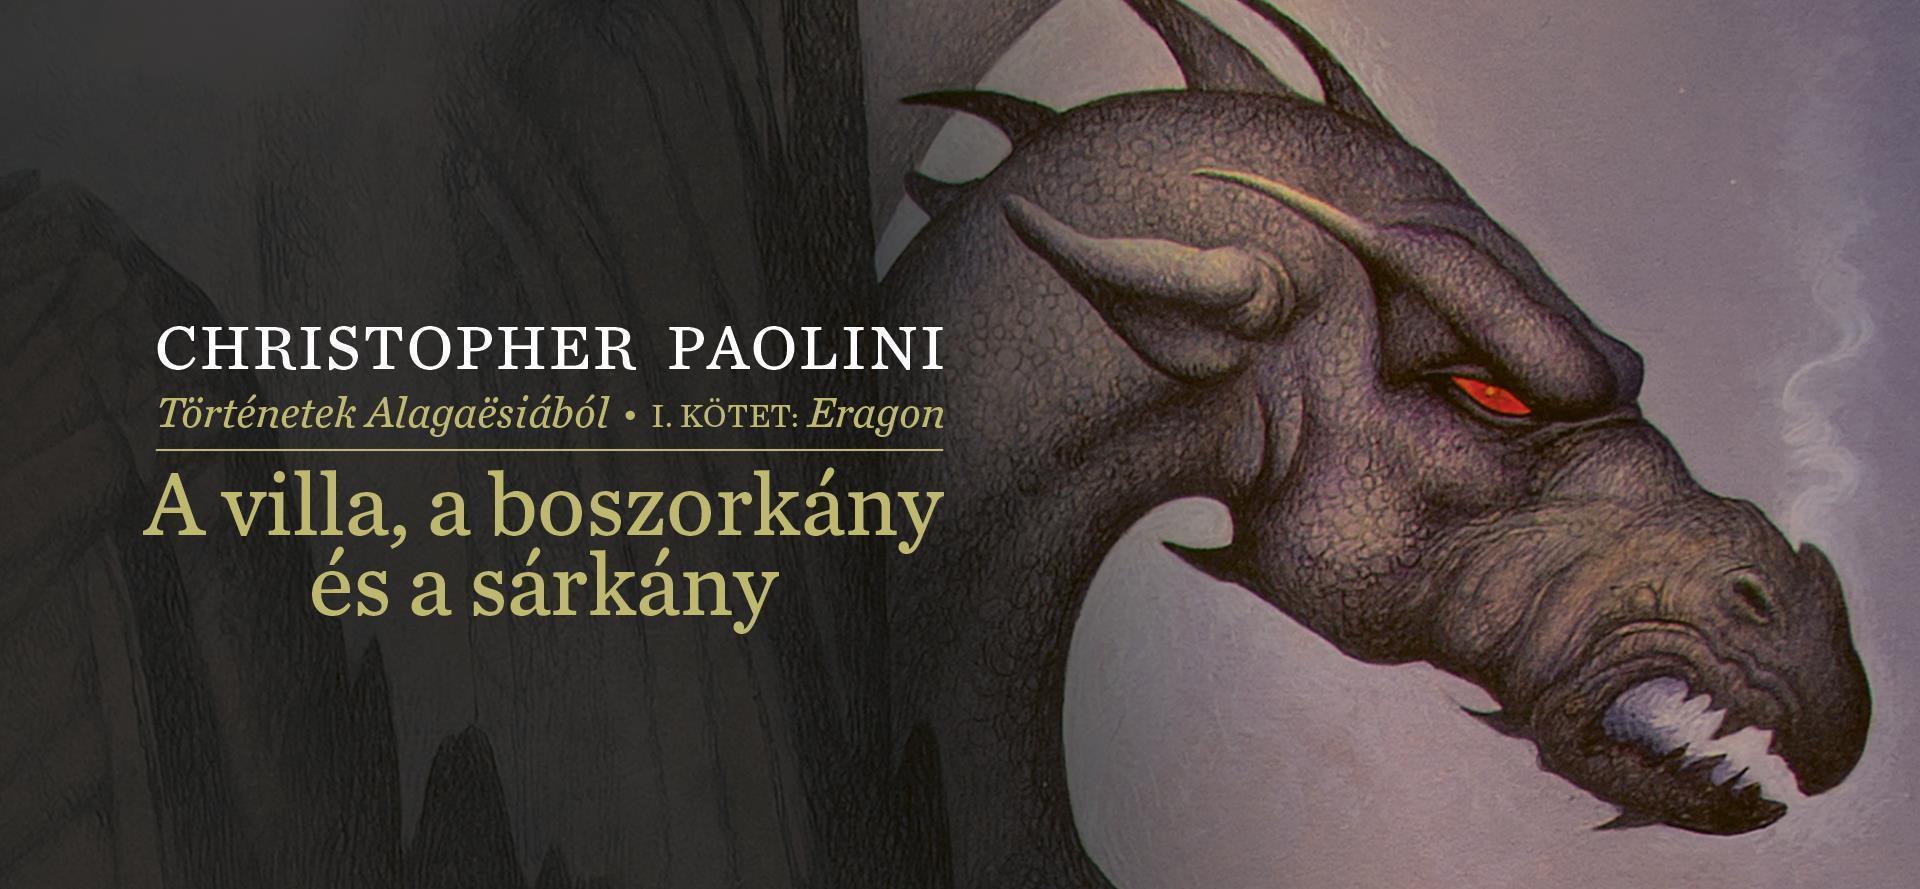 Megjelent a világhírű Eragon-sorozatot jegyző Paolini új kötete